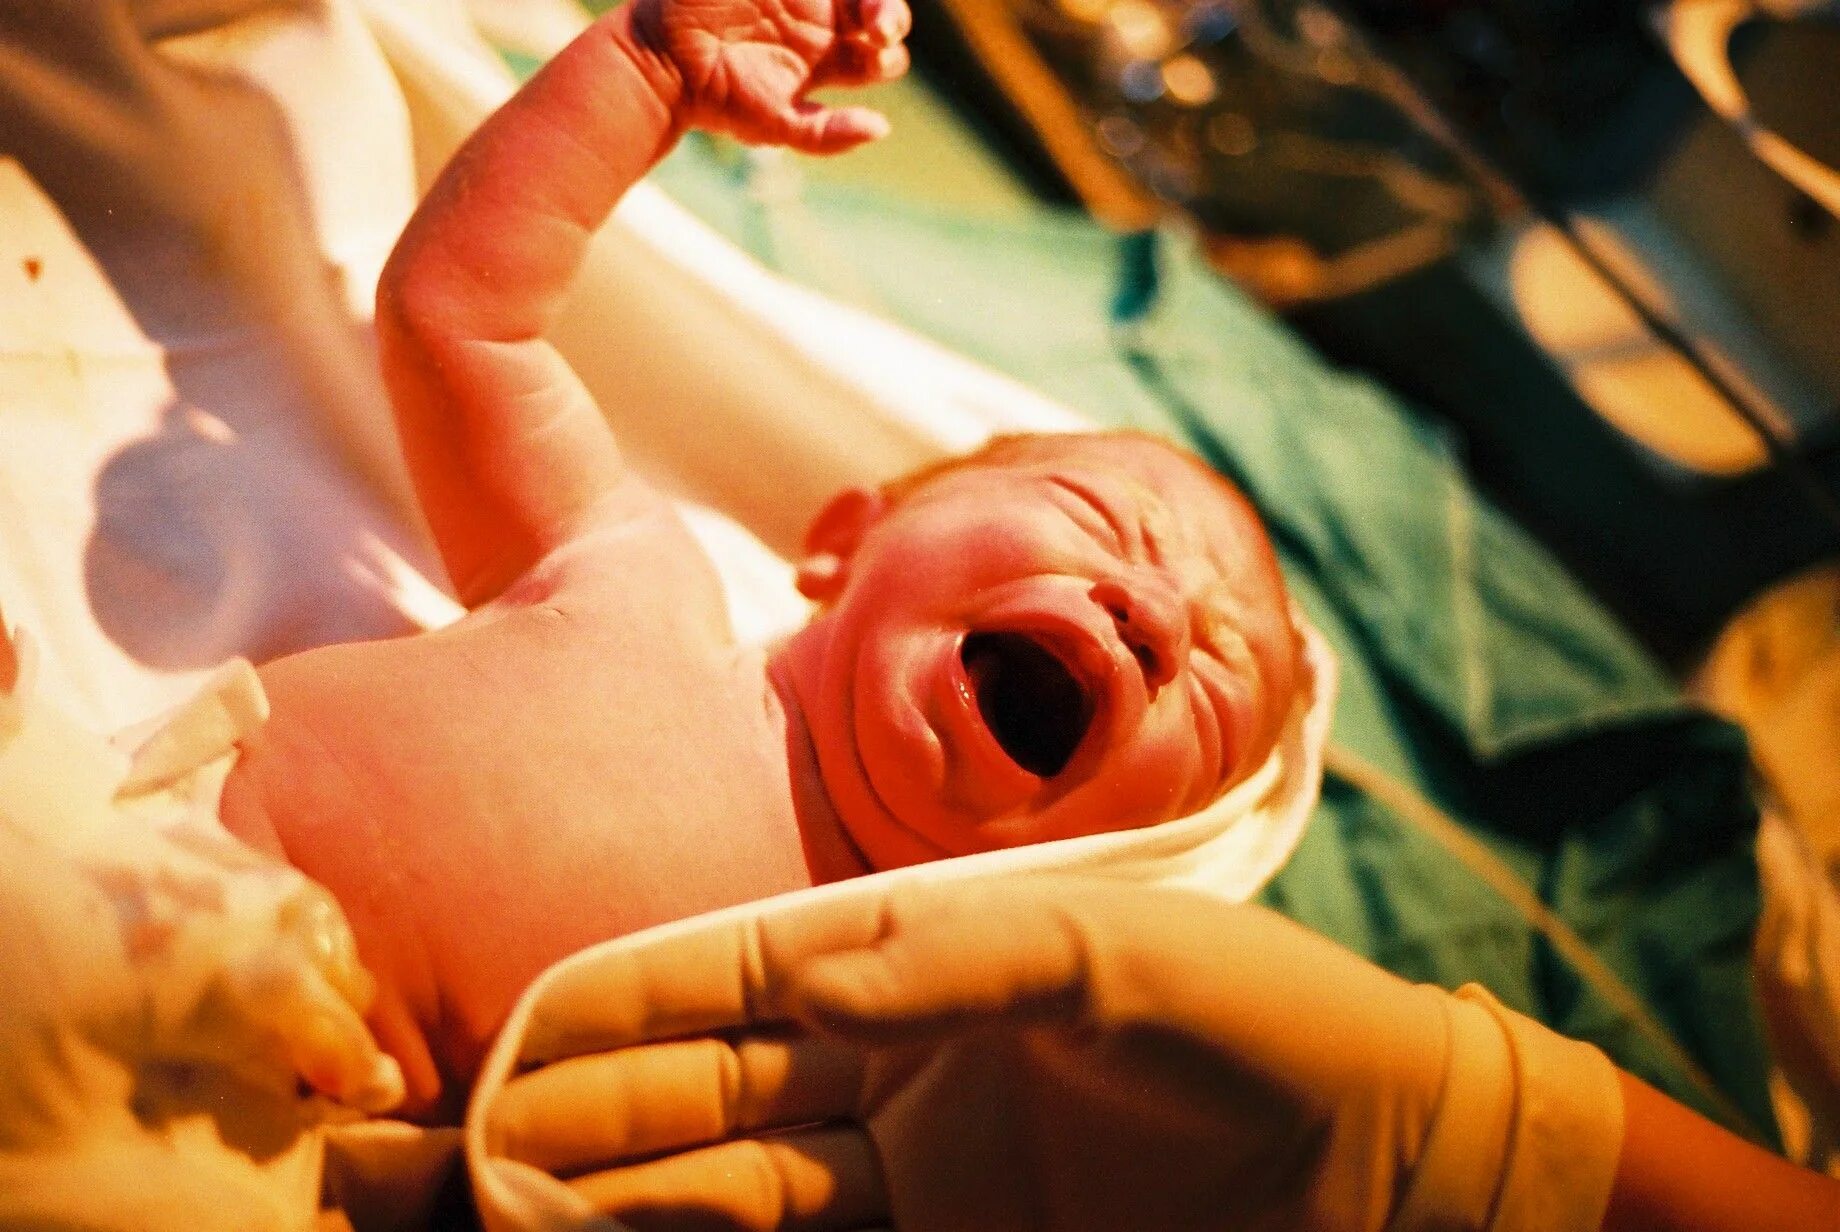 Где родится ребенок. Процесс рождения ребенка в роддоме. Новорожденный в родильном зале.